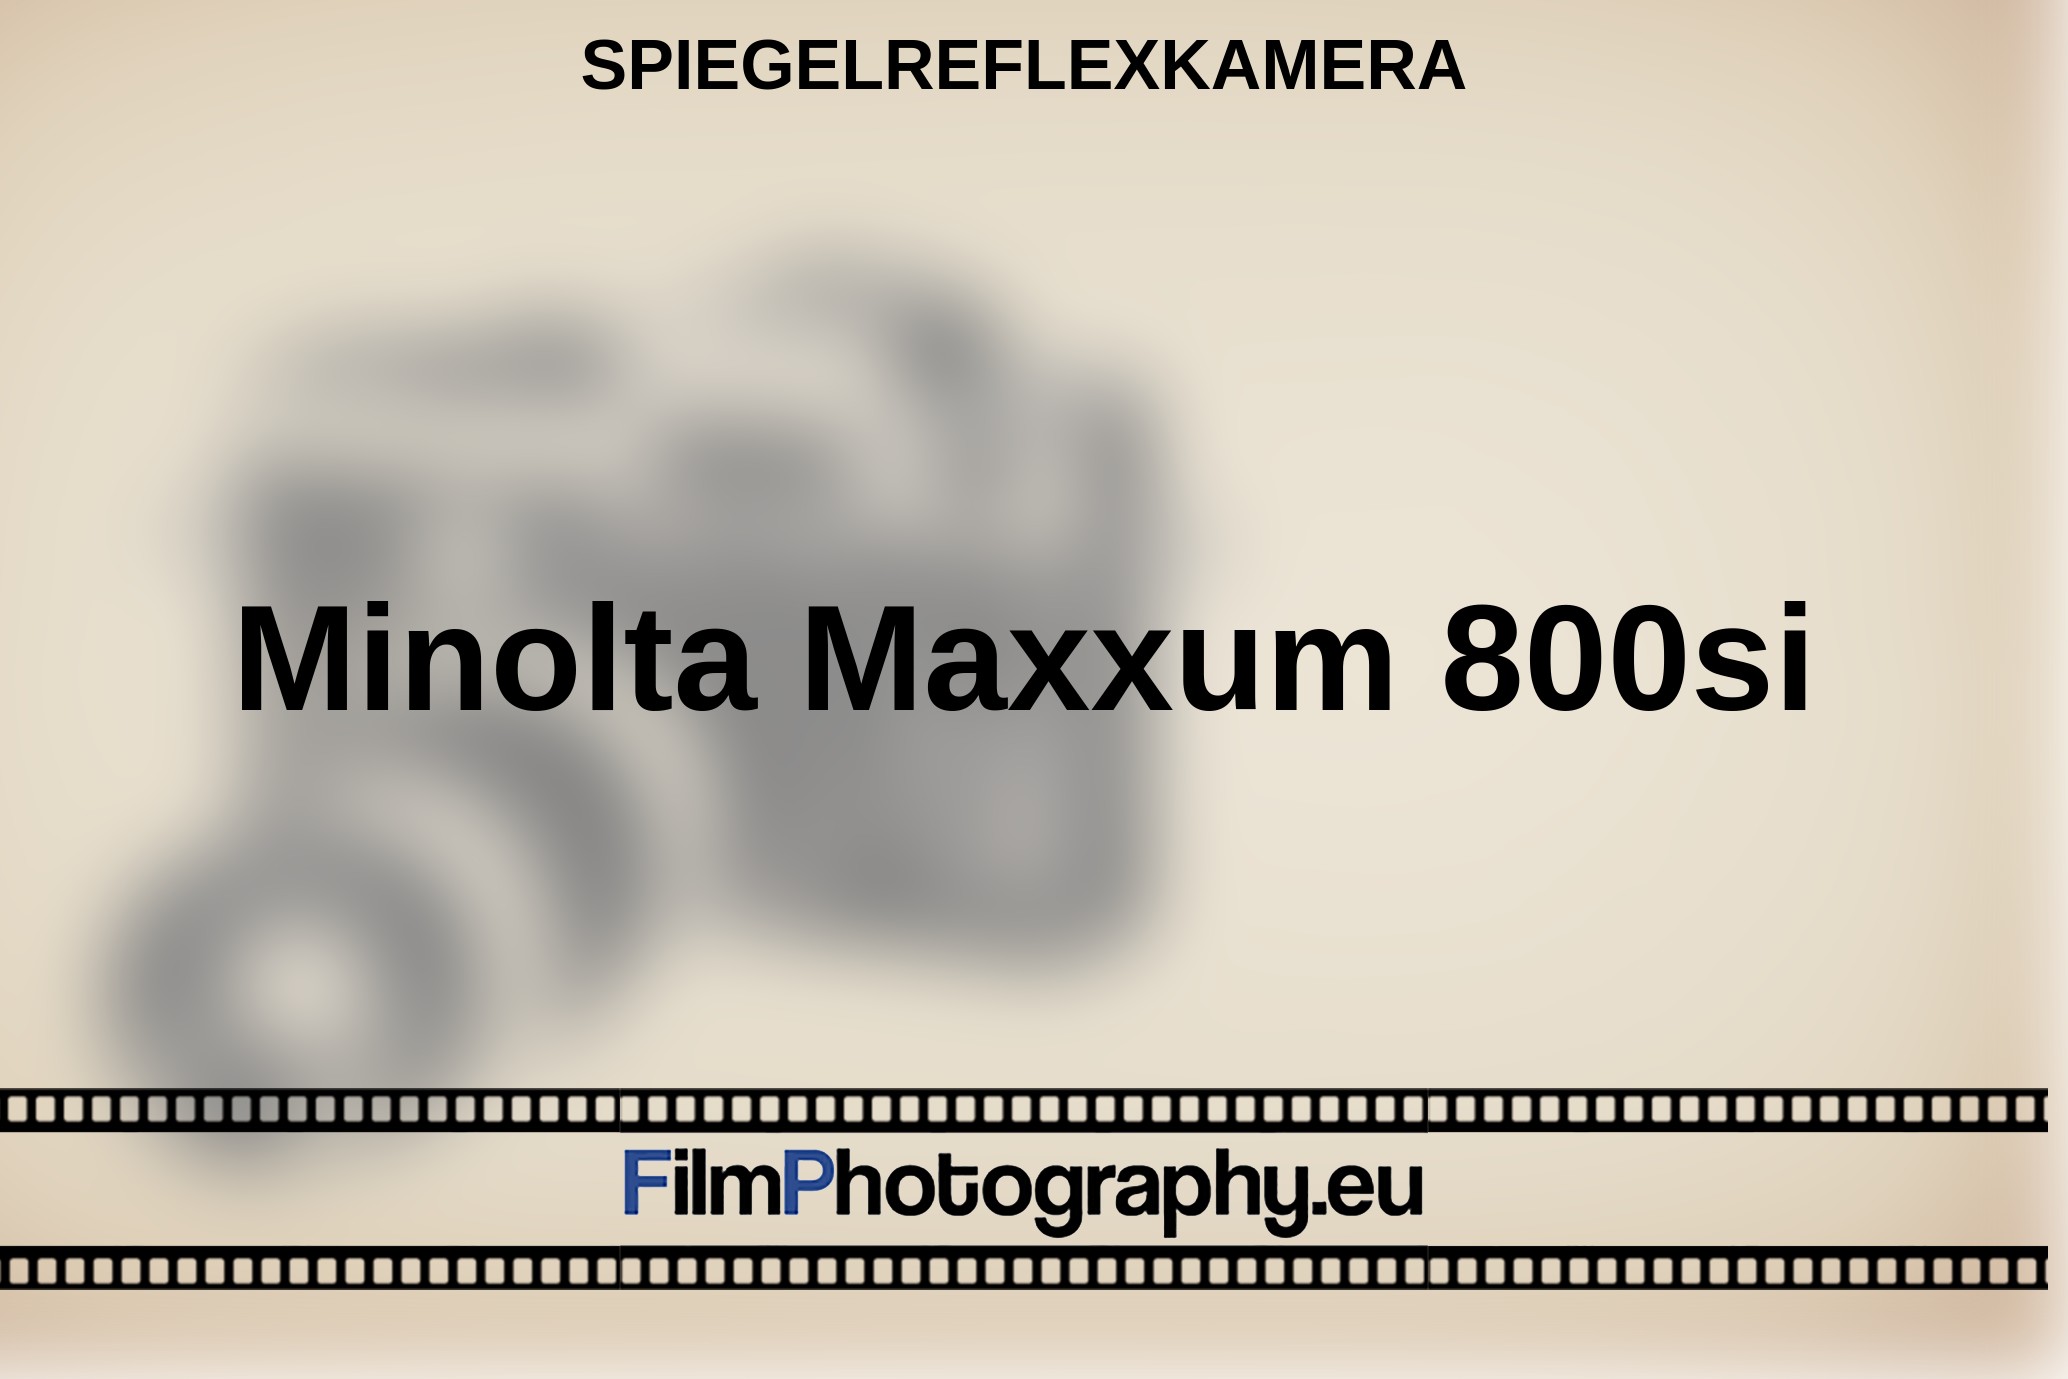 Minolta-Maxxum-800si-Spiegelreflexkamera-bnv.jpg